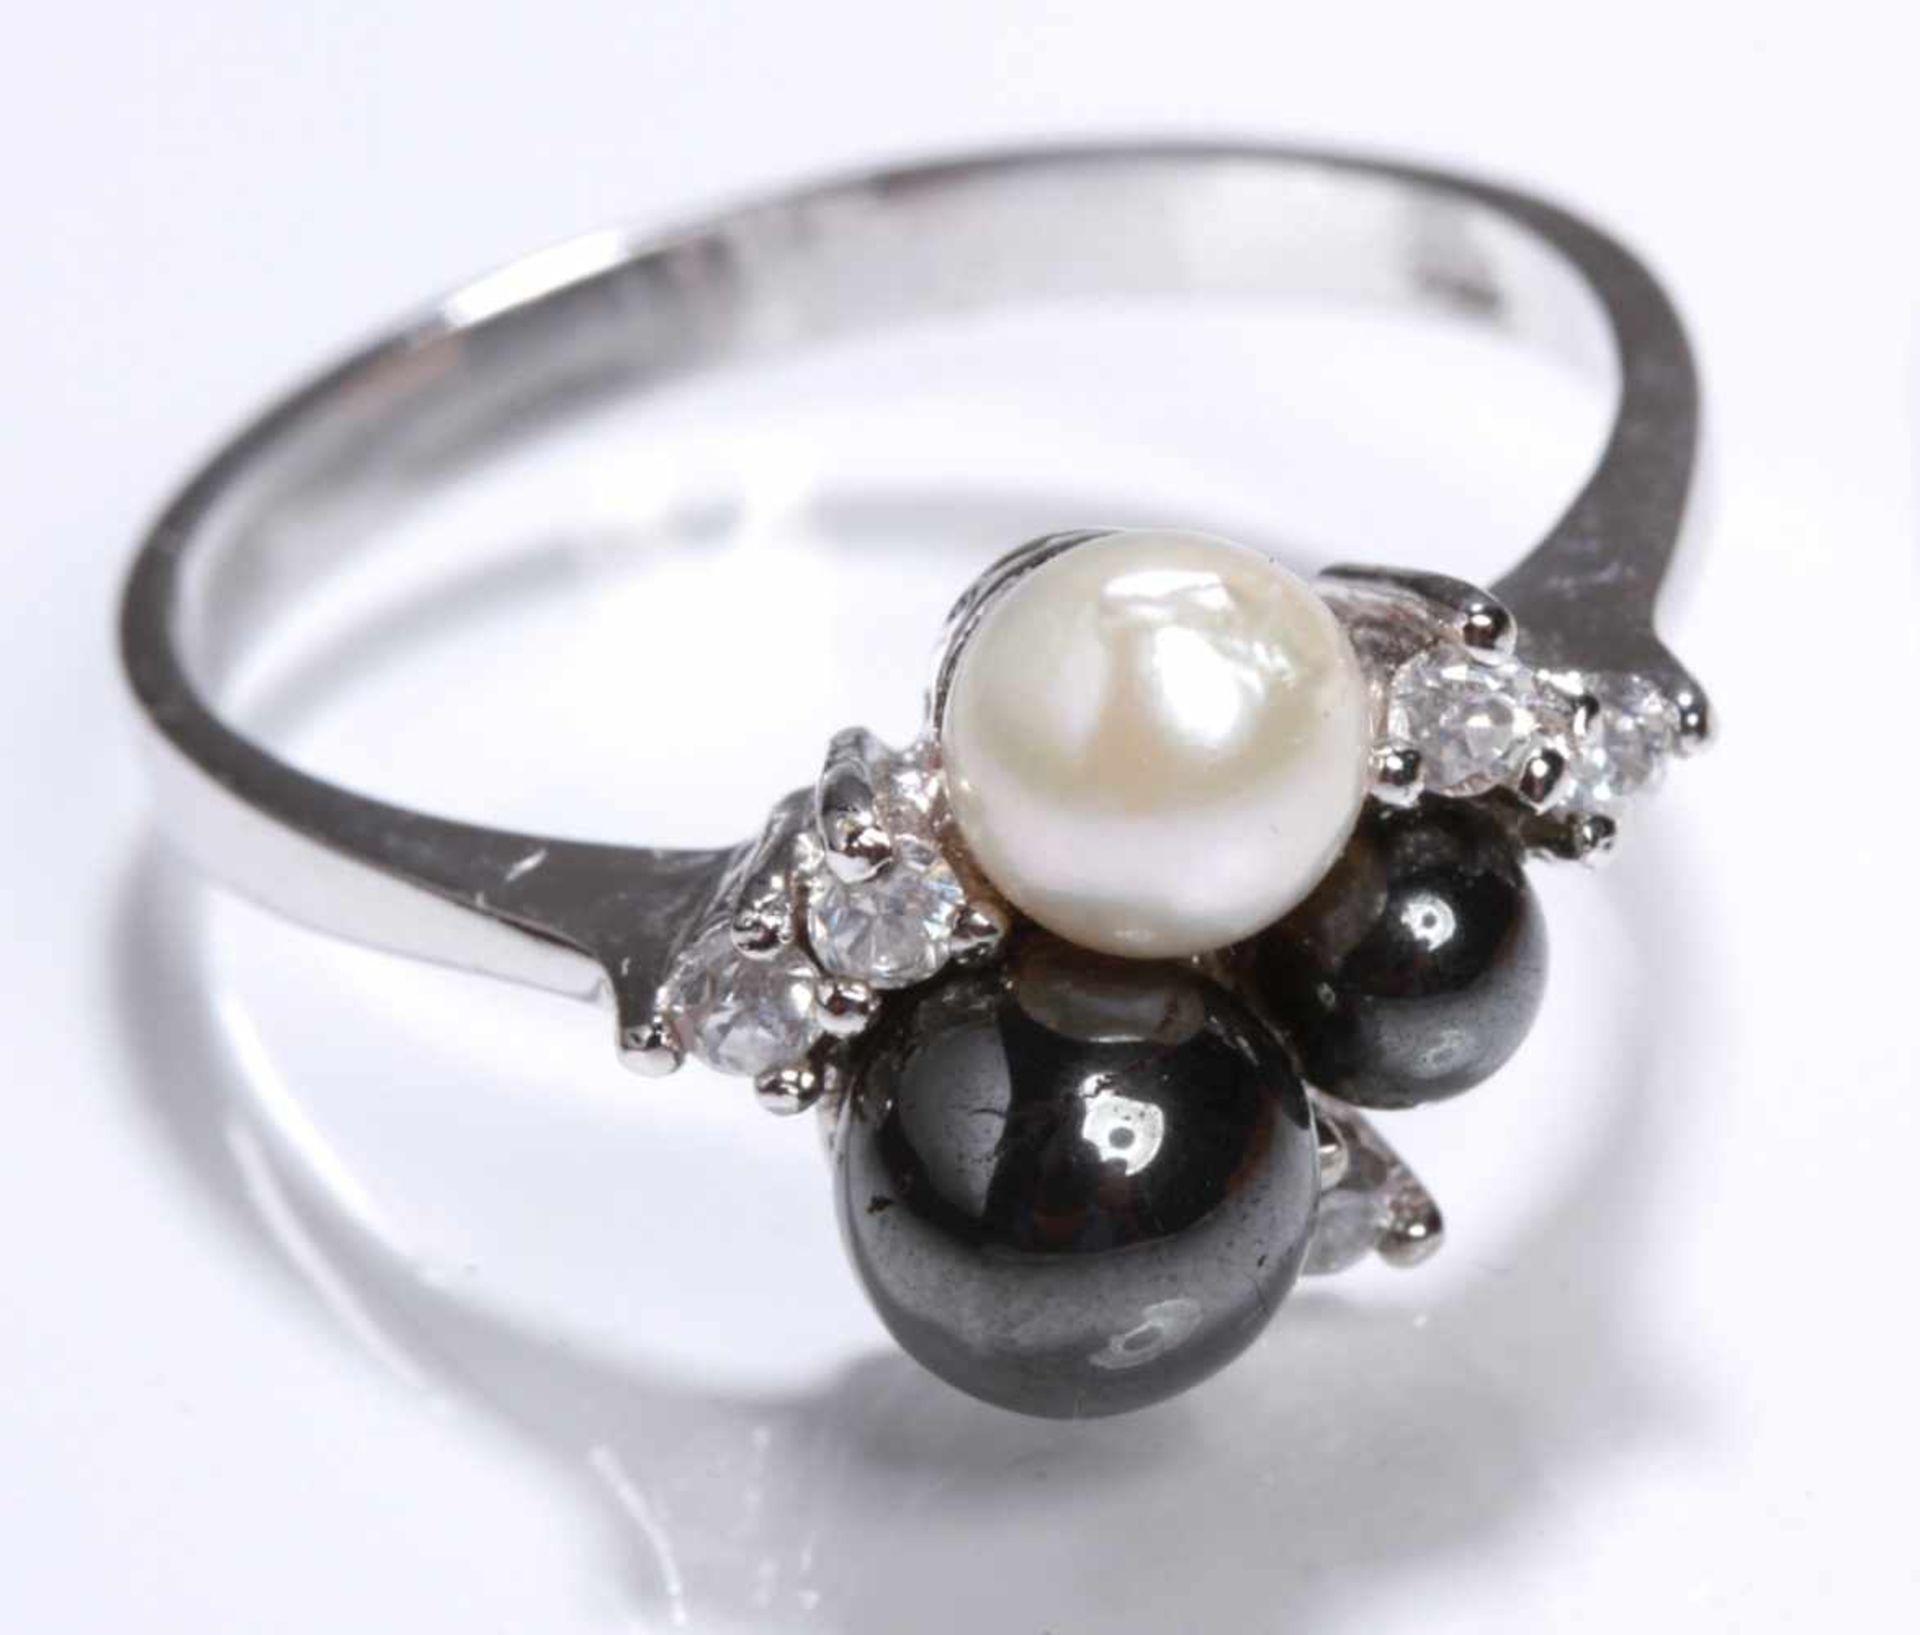 Damenring, Platin, besetzt mit 3 Zuchtperlen, D 4 - 6 mm, Farbe: weiß und schwarz, Lüster:sehr